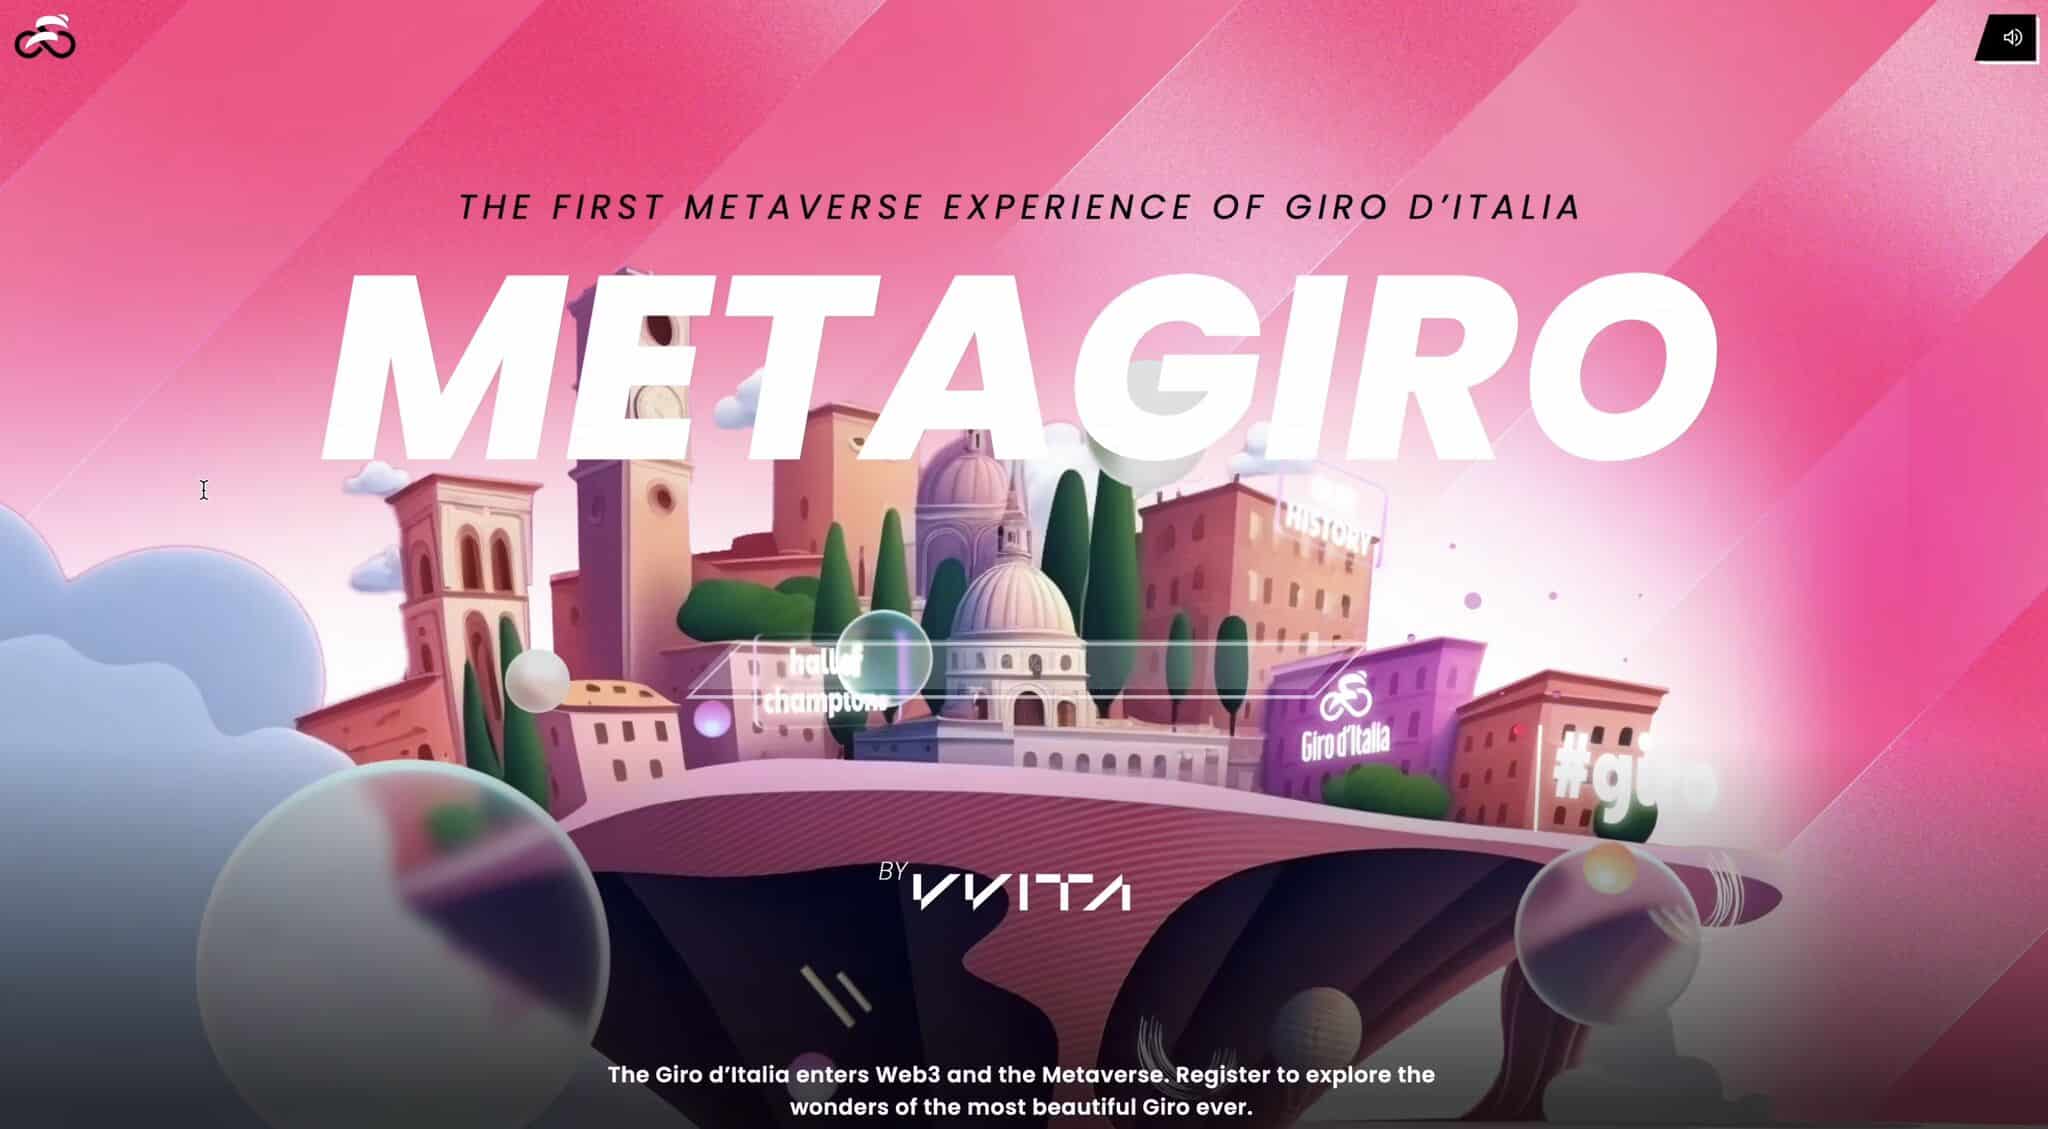 Il Giro d’Italia di ciclismo entra nel Metaverso: al debutto il Metagiro